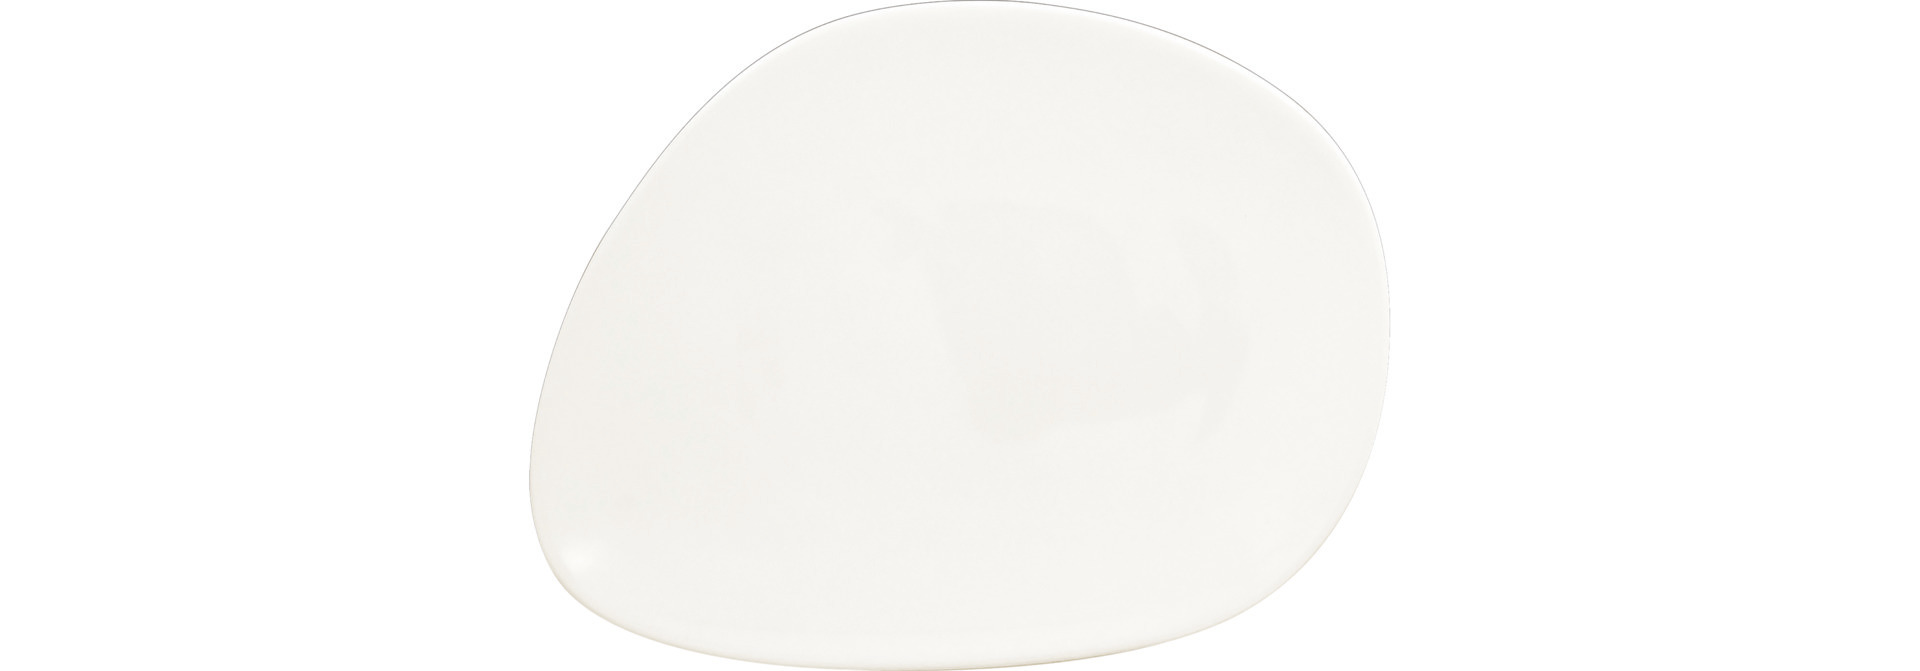 Teller flach shaped 200 x 160 mm plain-white